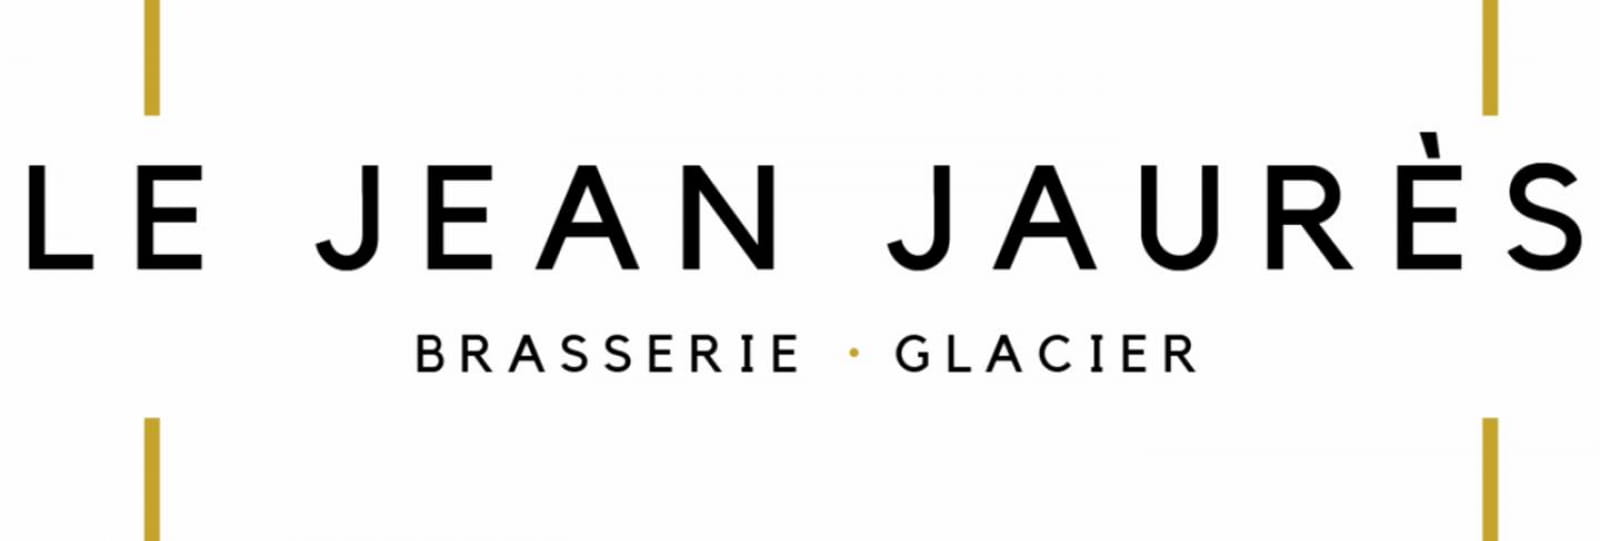 Der Jean Jaurès